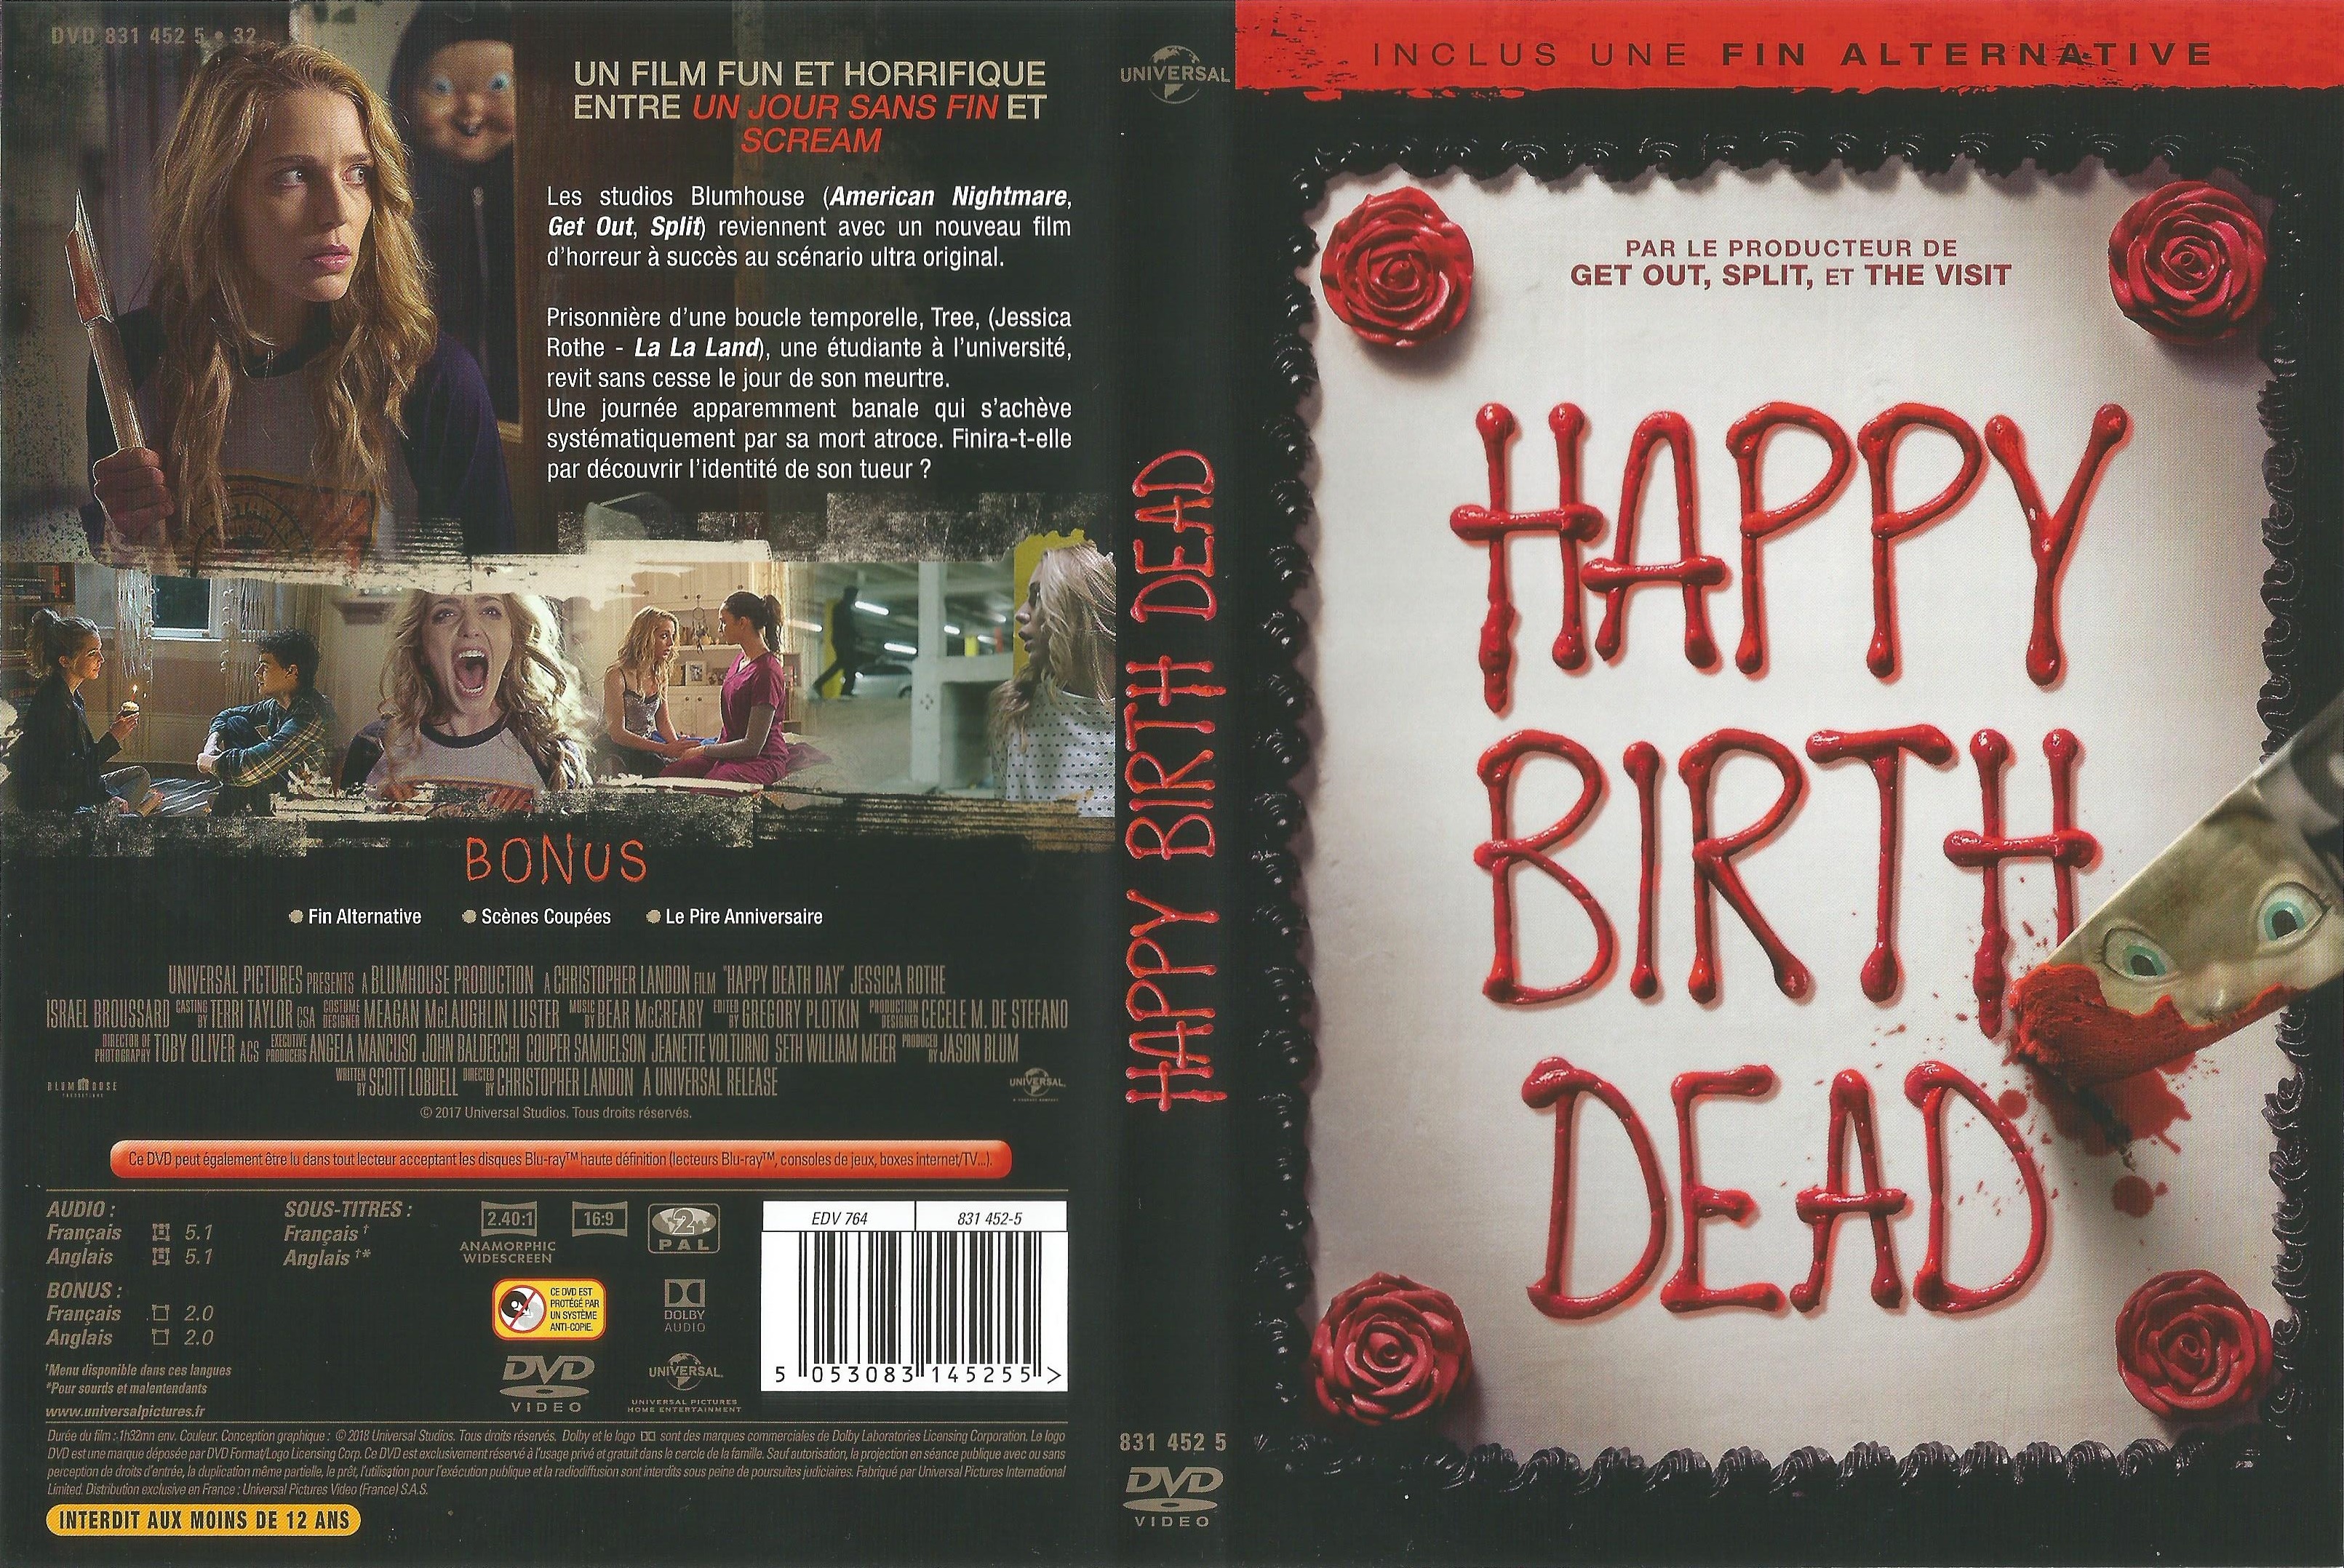 Jaquette DVD Happy Birth Dead